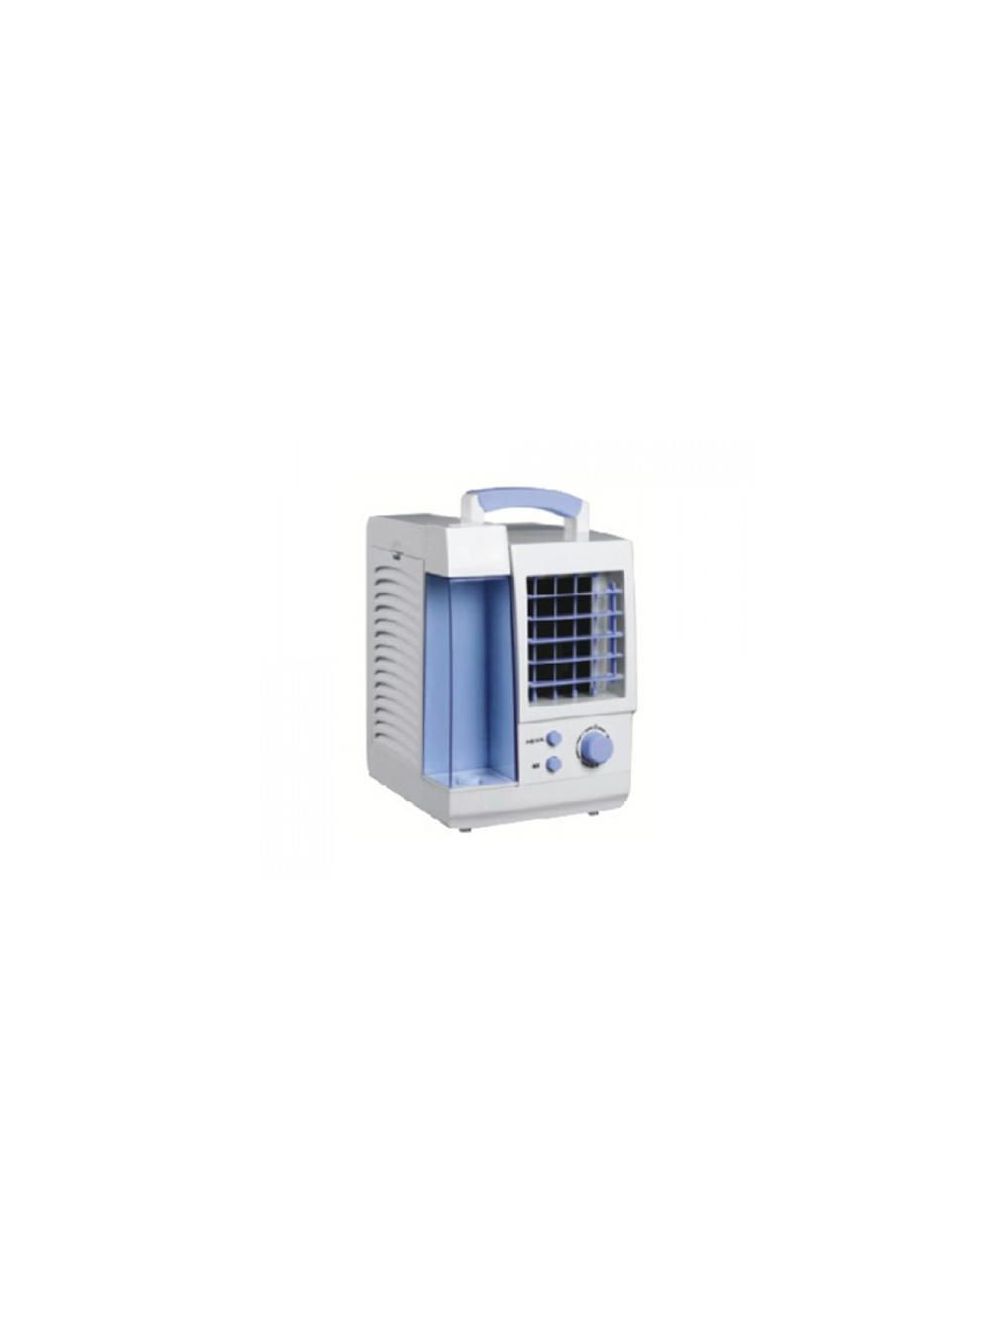 Olsenmark Mini Air Cooler - Portable Fan, Air Cooler, Humidifier, Air Purifier - 0.80 liter - 3 Wind Speed - BS Plug